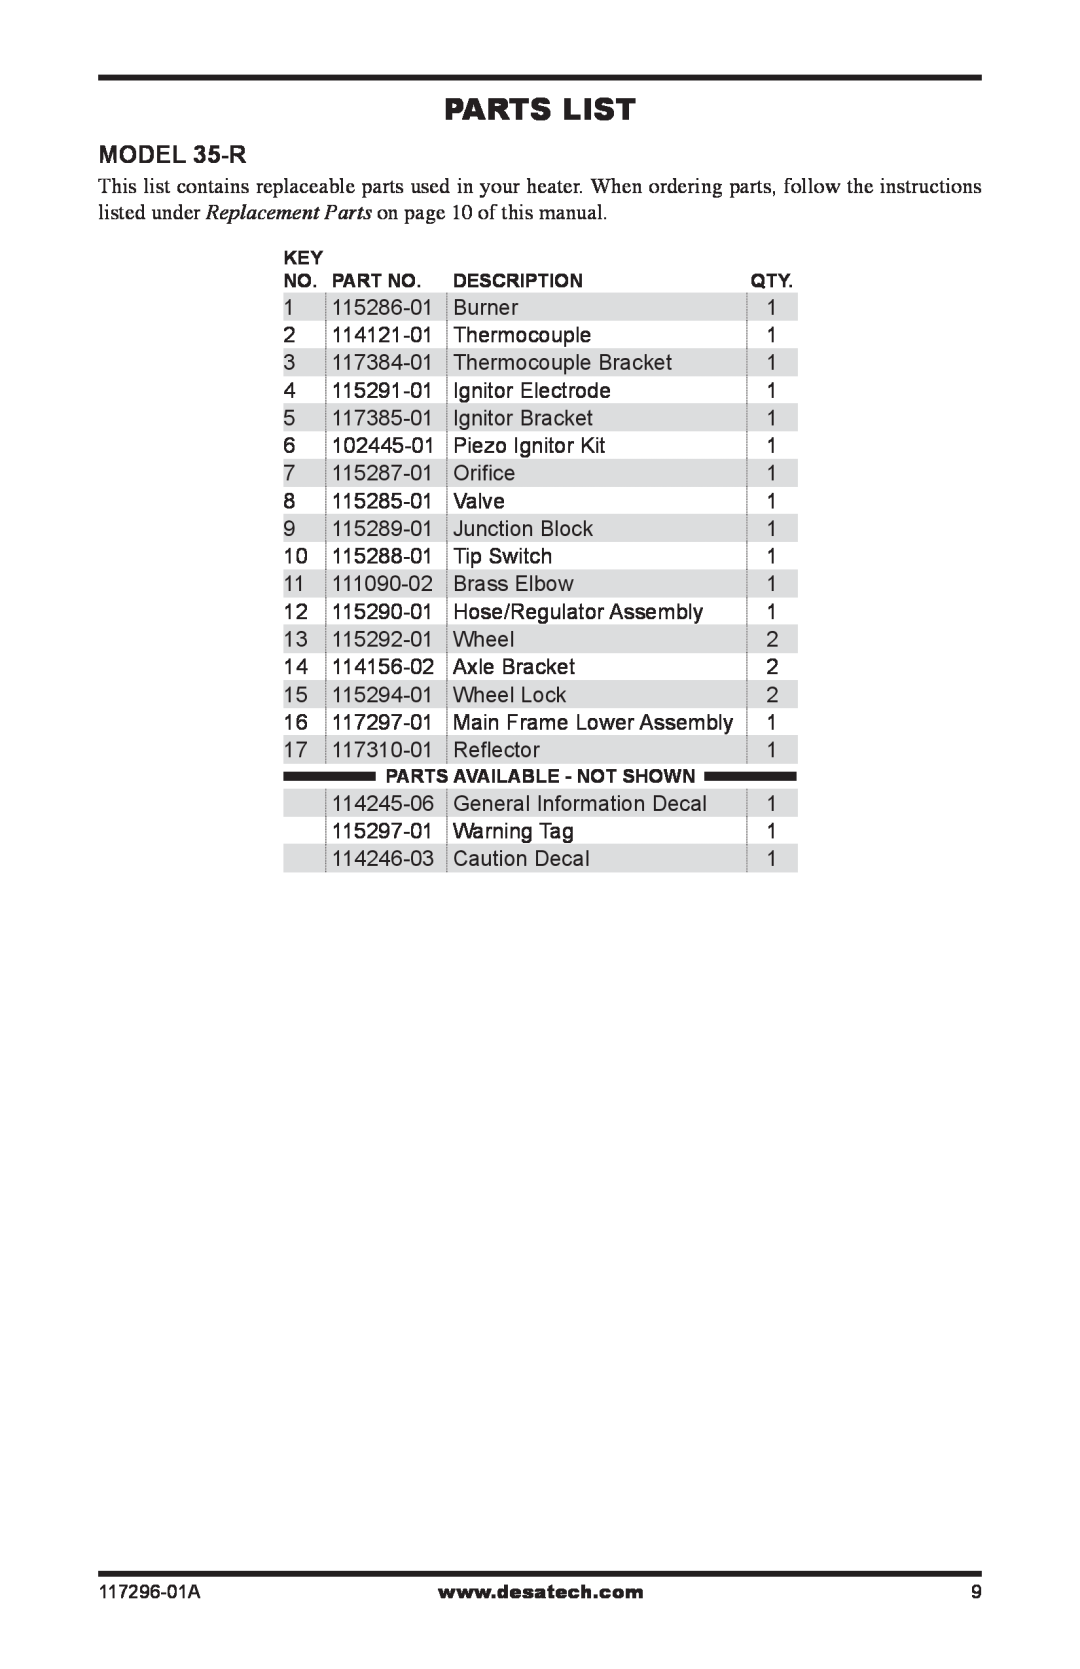 Desa owner manual Parts List, MODEL 35-R 